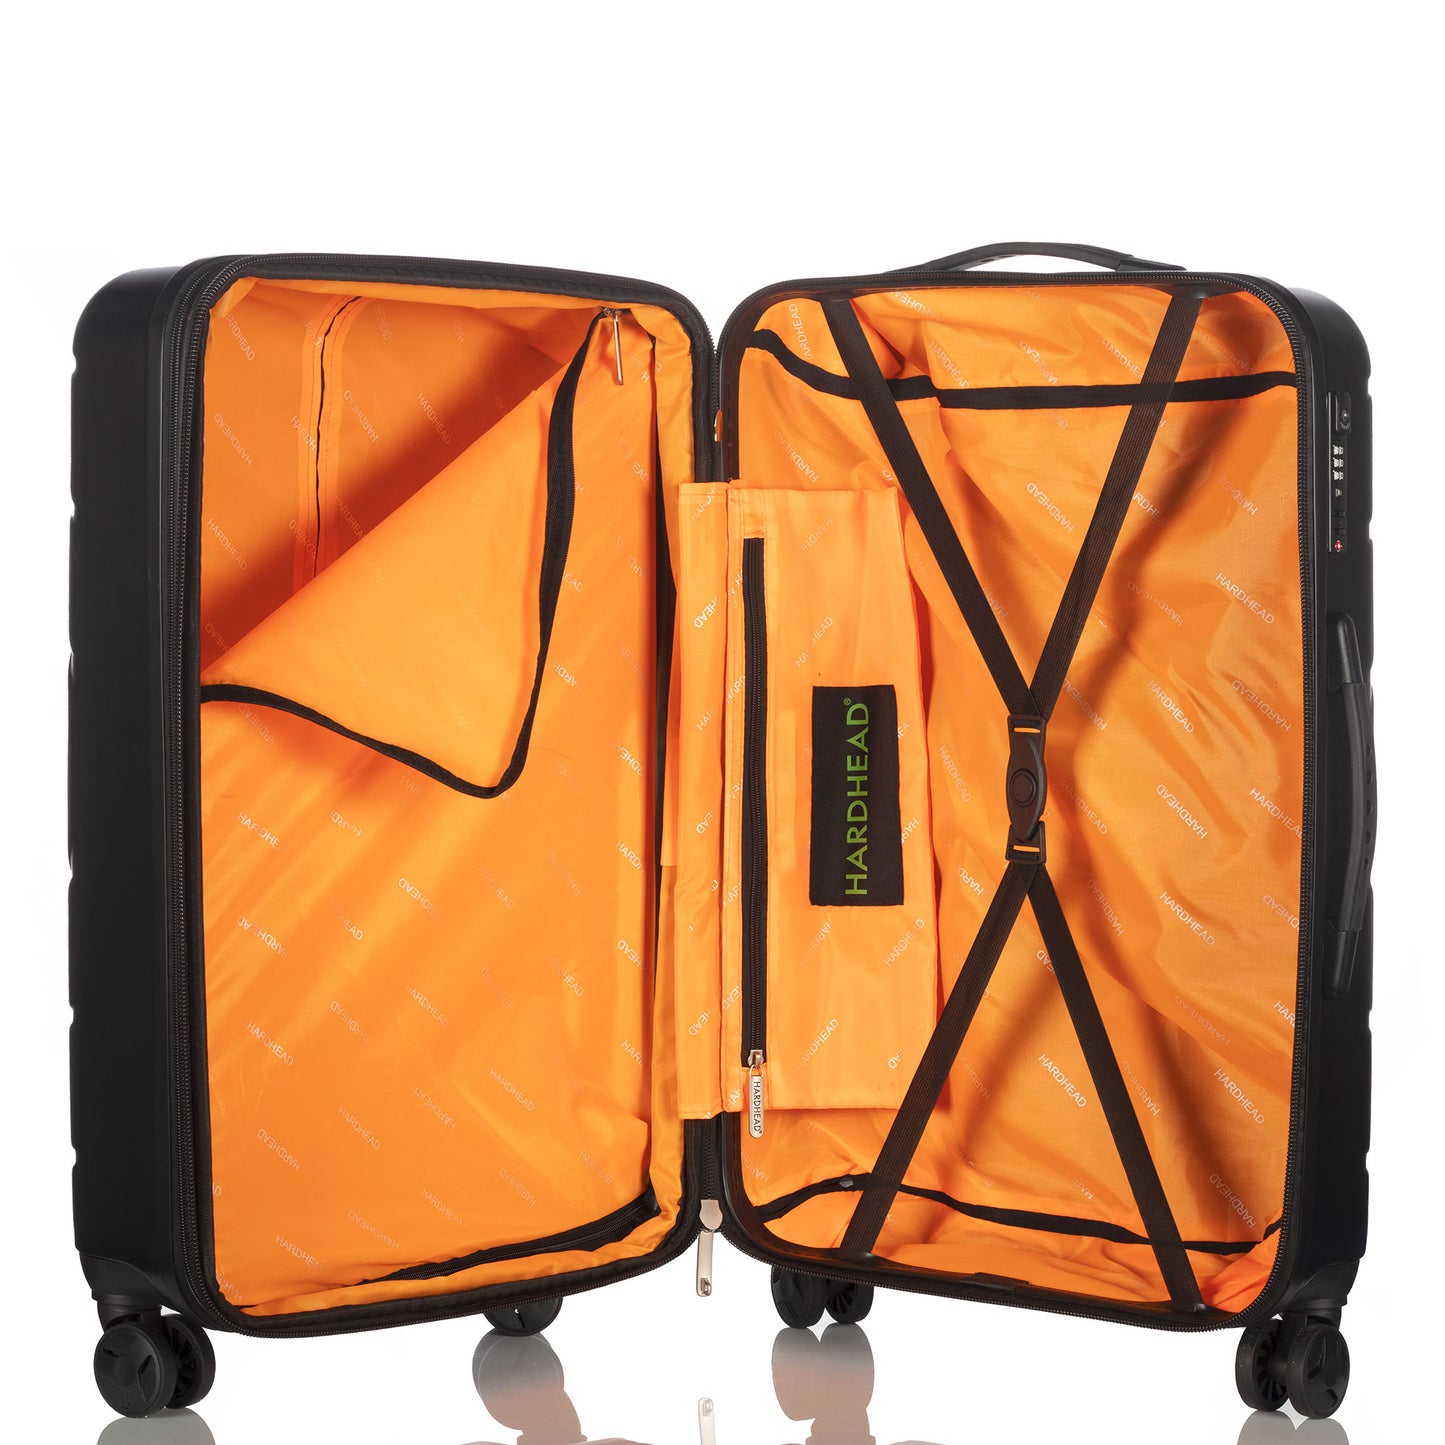 Hardhead Luggage (20/24/28") Eco Hardside Travel Suitcase with 4 360 Wheels Lock Included, Black